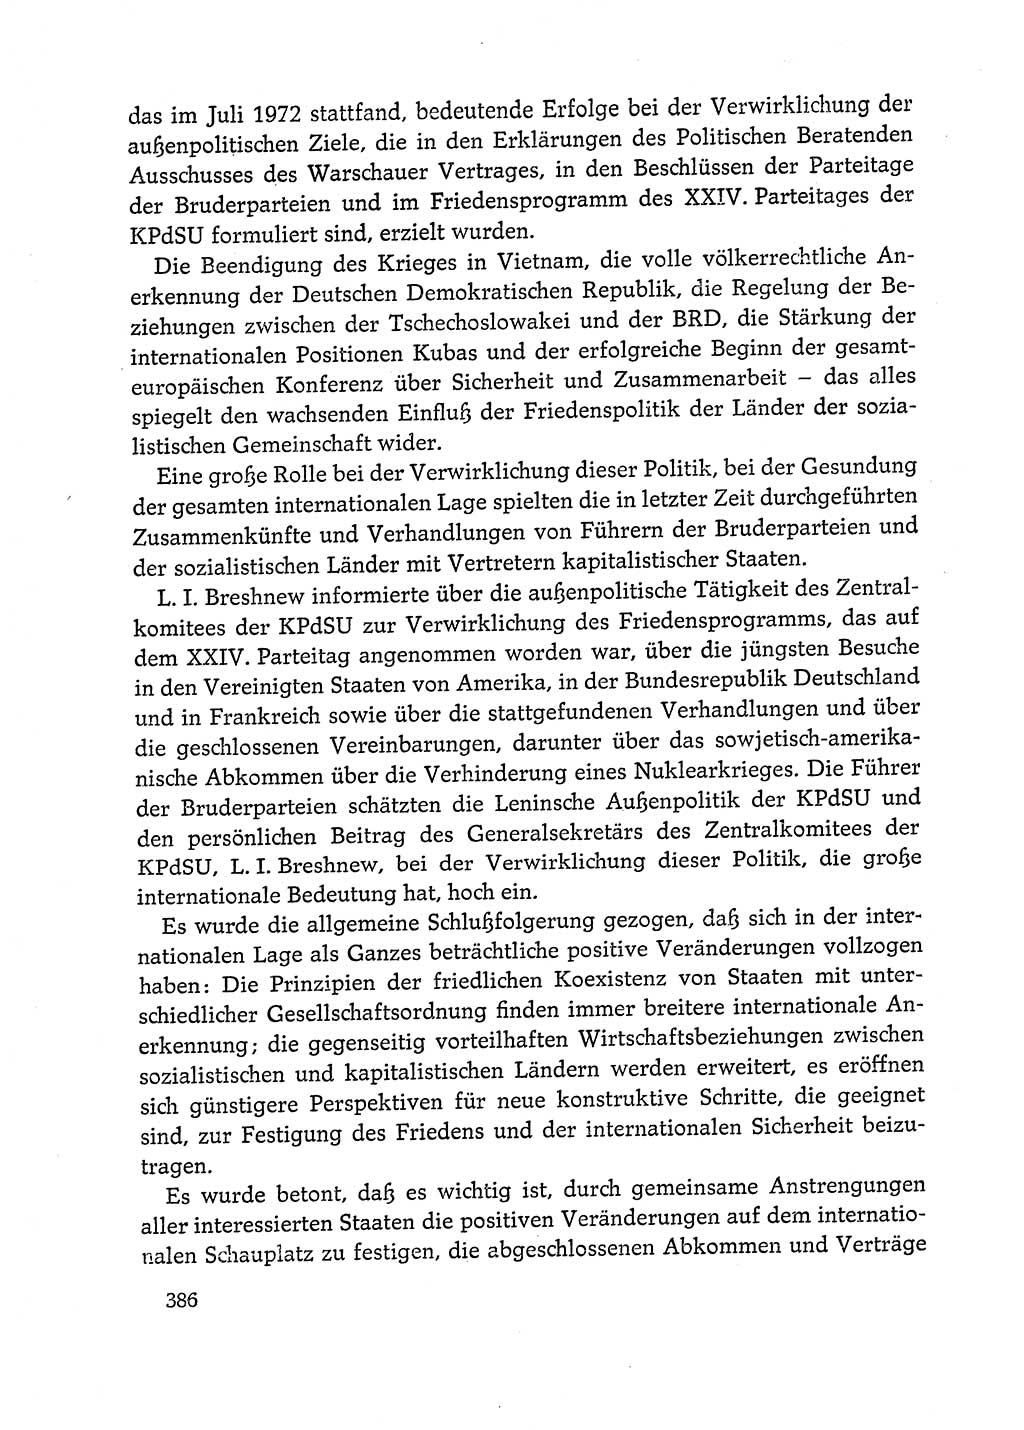 Dokumente der Sozialistischen Einheitspartei Deutschlands (SED) [Deutsche Demokratische Republik (DDR)] 1972-1973, Seite 386 (Dok. SED DDR 1972-1973, S. 386)